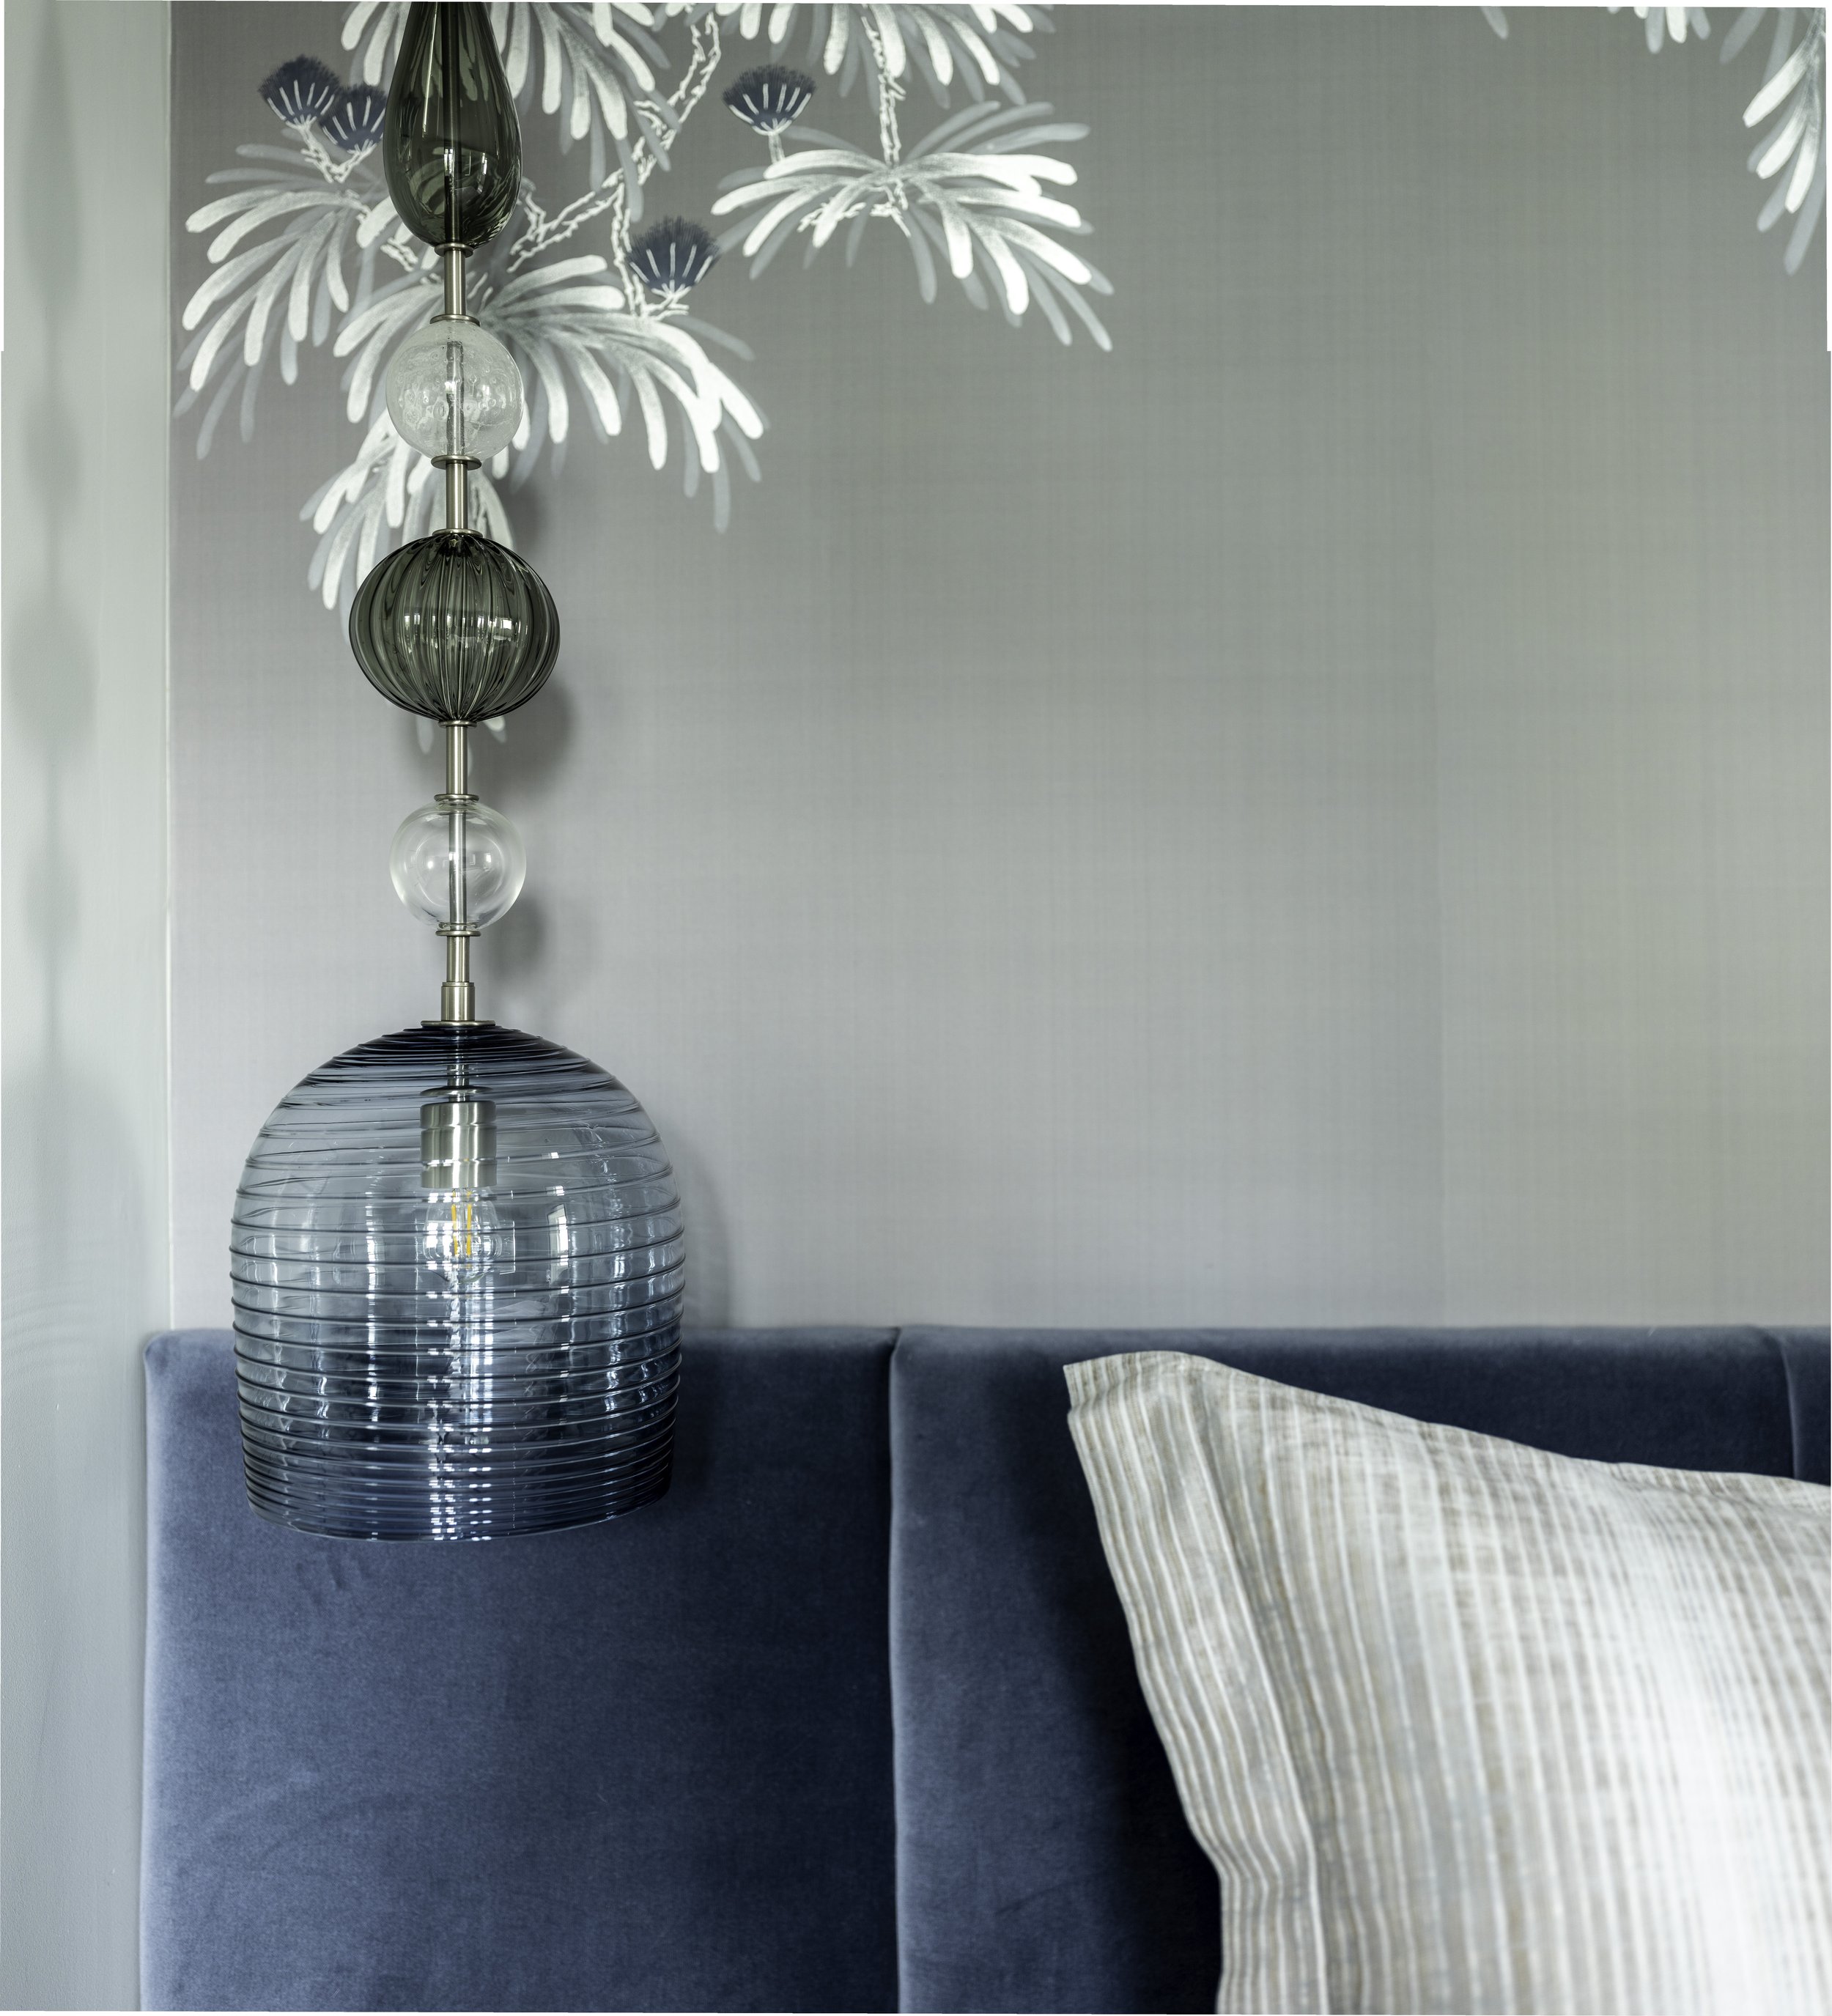 16-blue-gray-white-glass-fixture-blue-headboard-manhattan-penthouse-rinfret-interior-designs..jpg